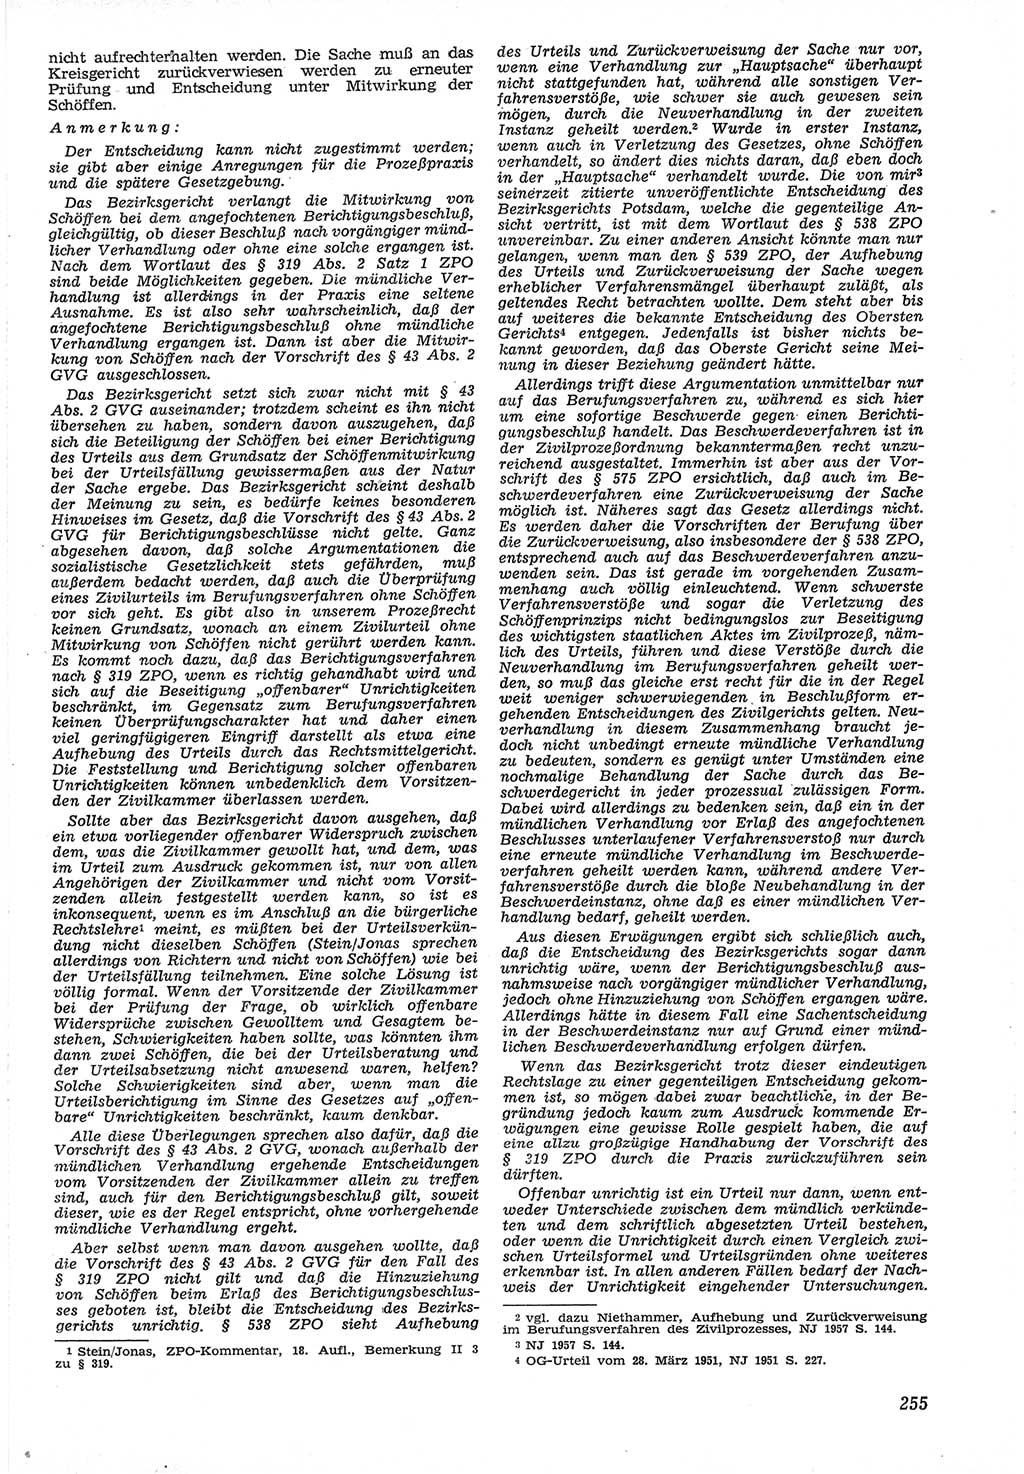 Neue Justiz (NJ), Zeitschrift für Recht und Rechtswissenschaft [Deutsche Demokratische Republik (DDR)], 12. Jahrgang 1958, Seite 255 (NJ DDR 1958, S. 255)